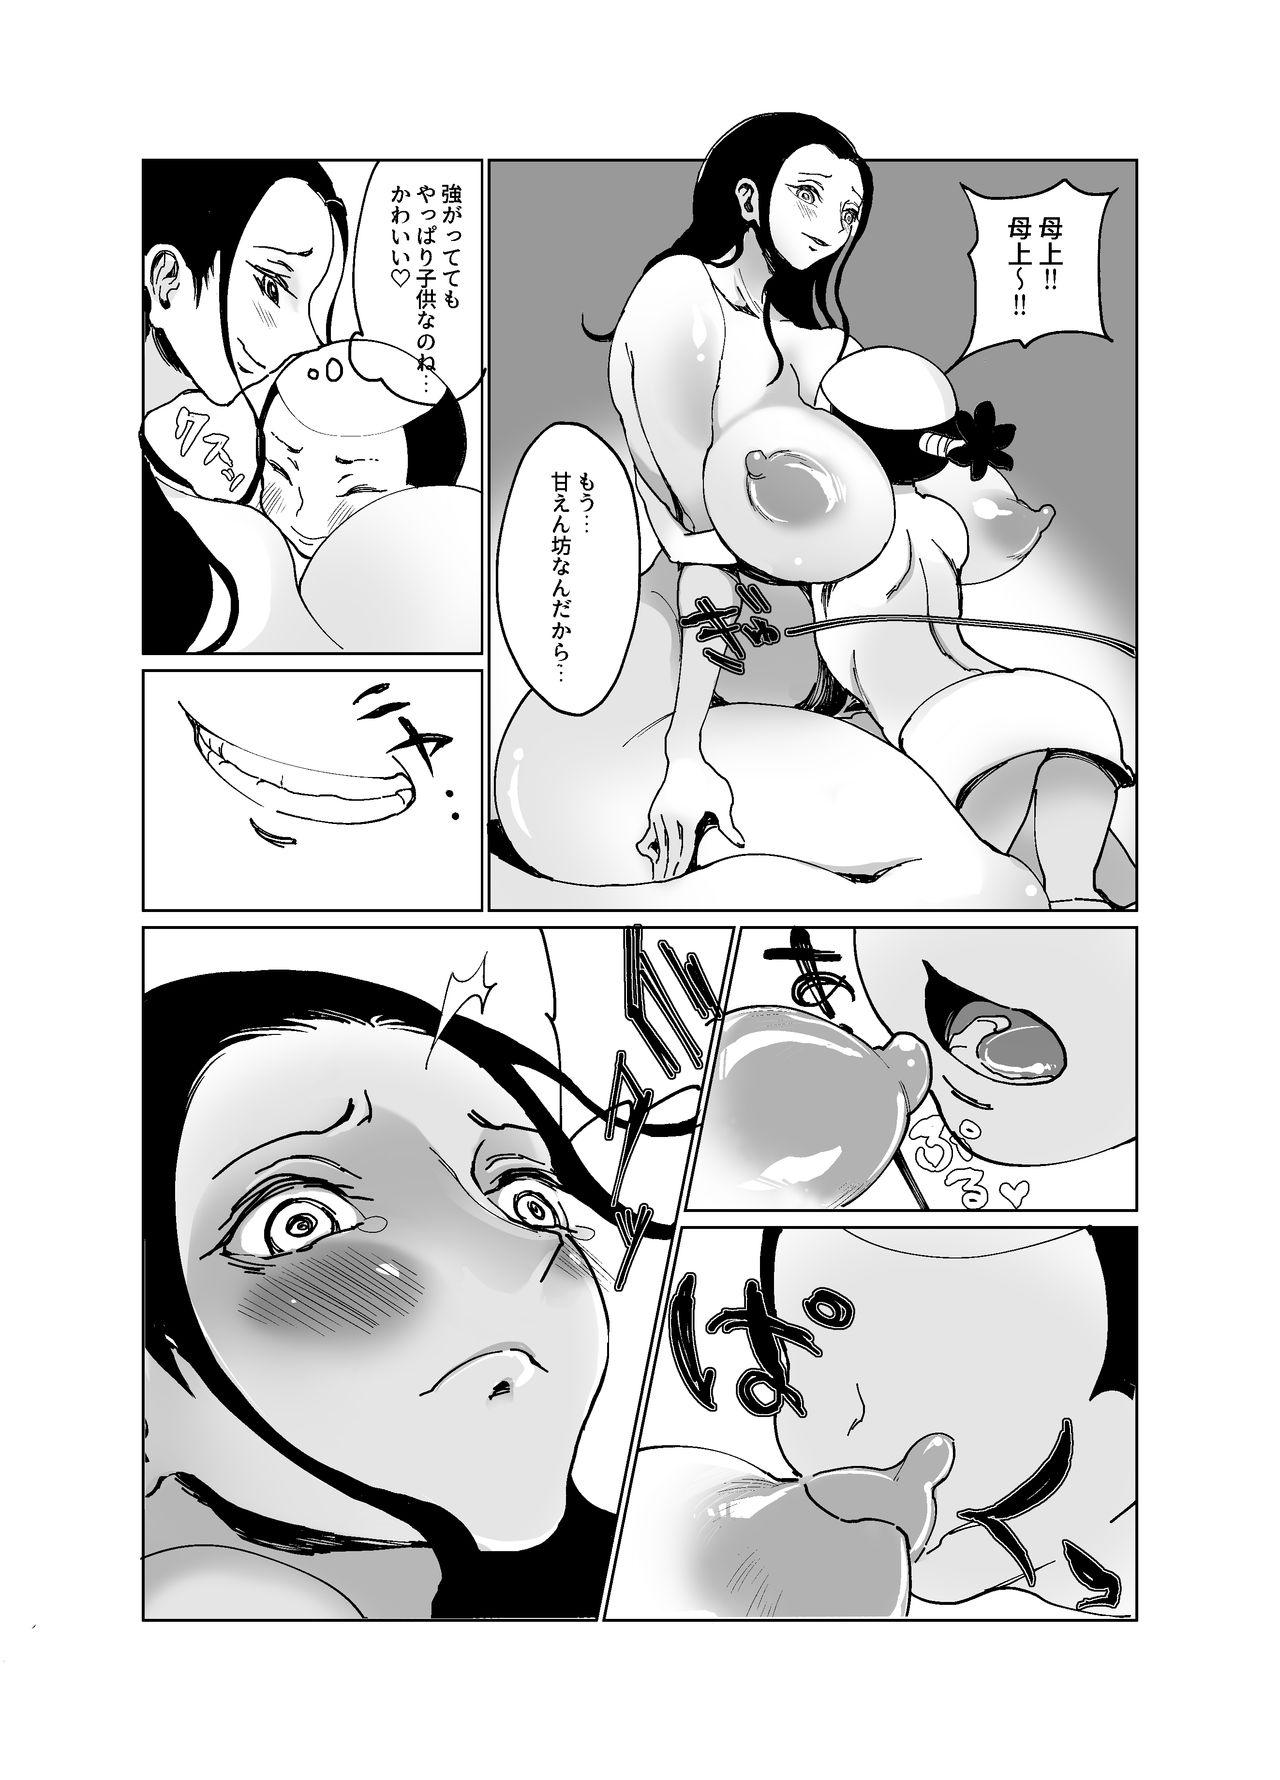 8teenxxx Kuso Gaki Vs Nico Robin - One piece Adult Toys - Page 4